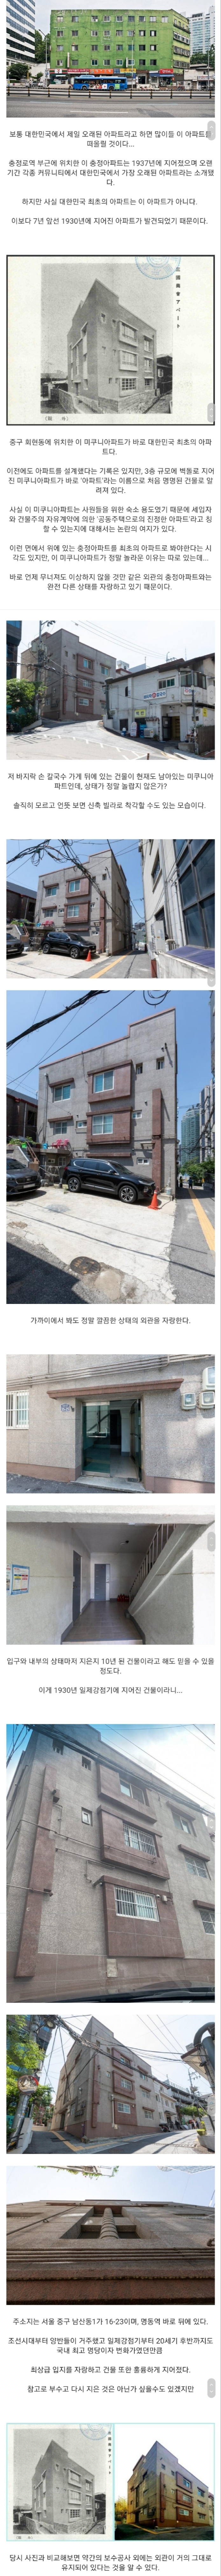 大韓民国で最も古いアパート.jpg